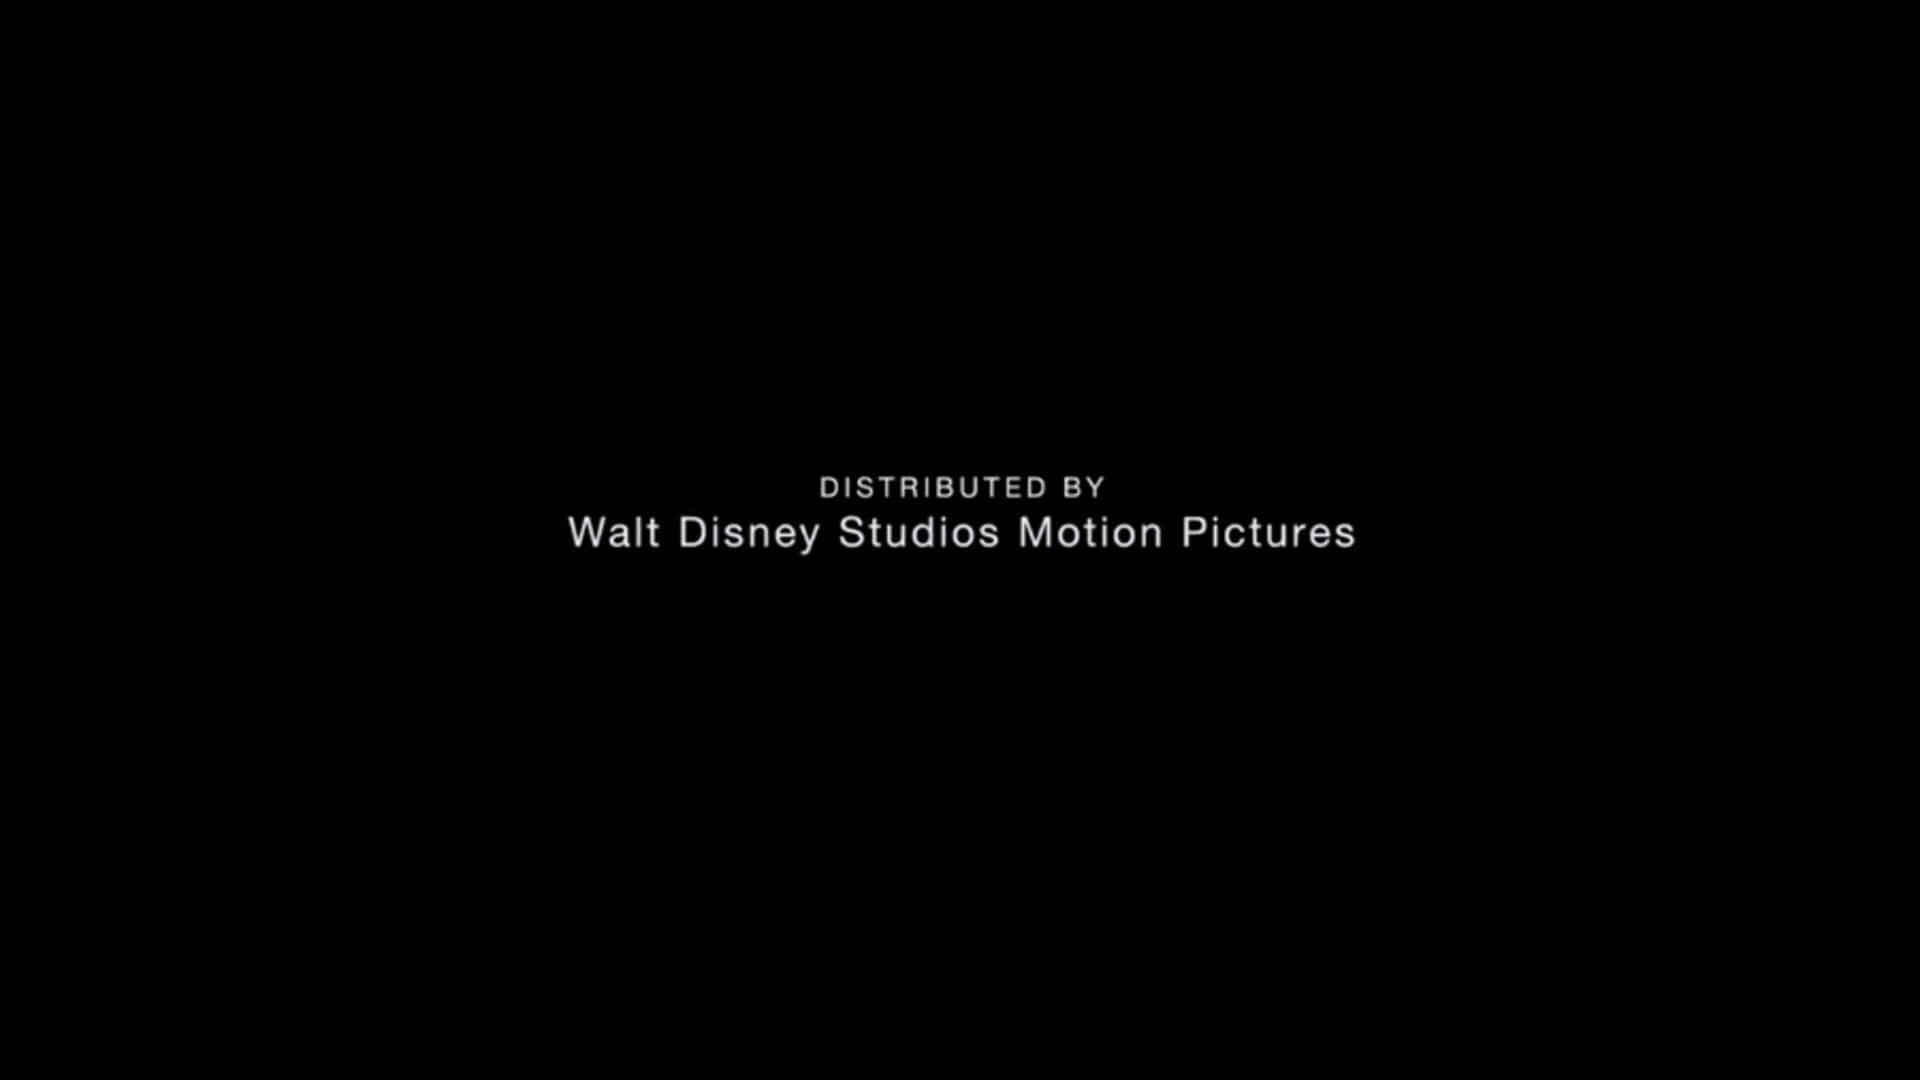 Amagia Do Walt Disney Studios Motion Pictures.